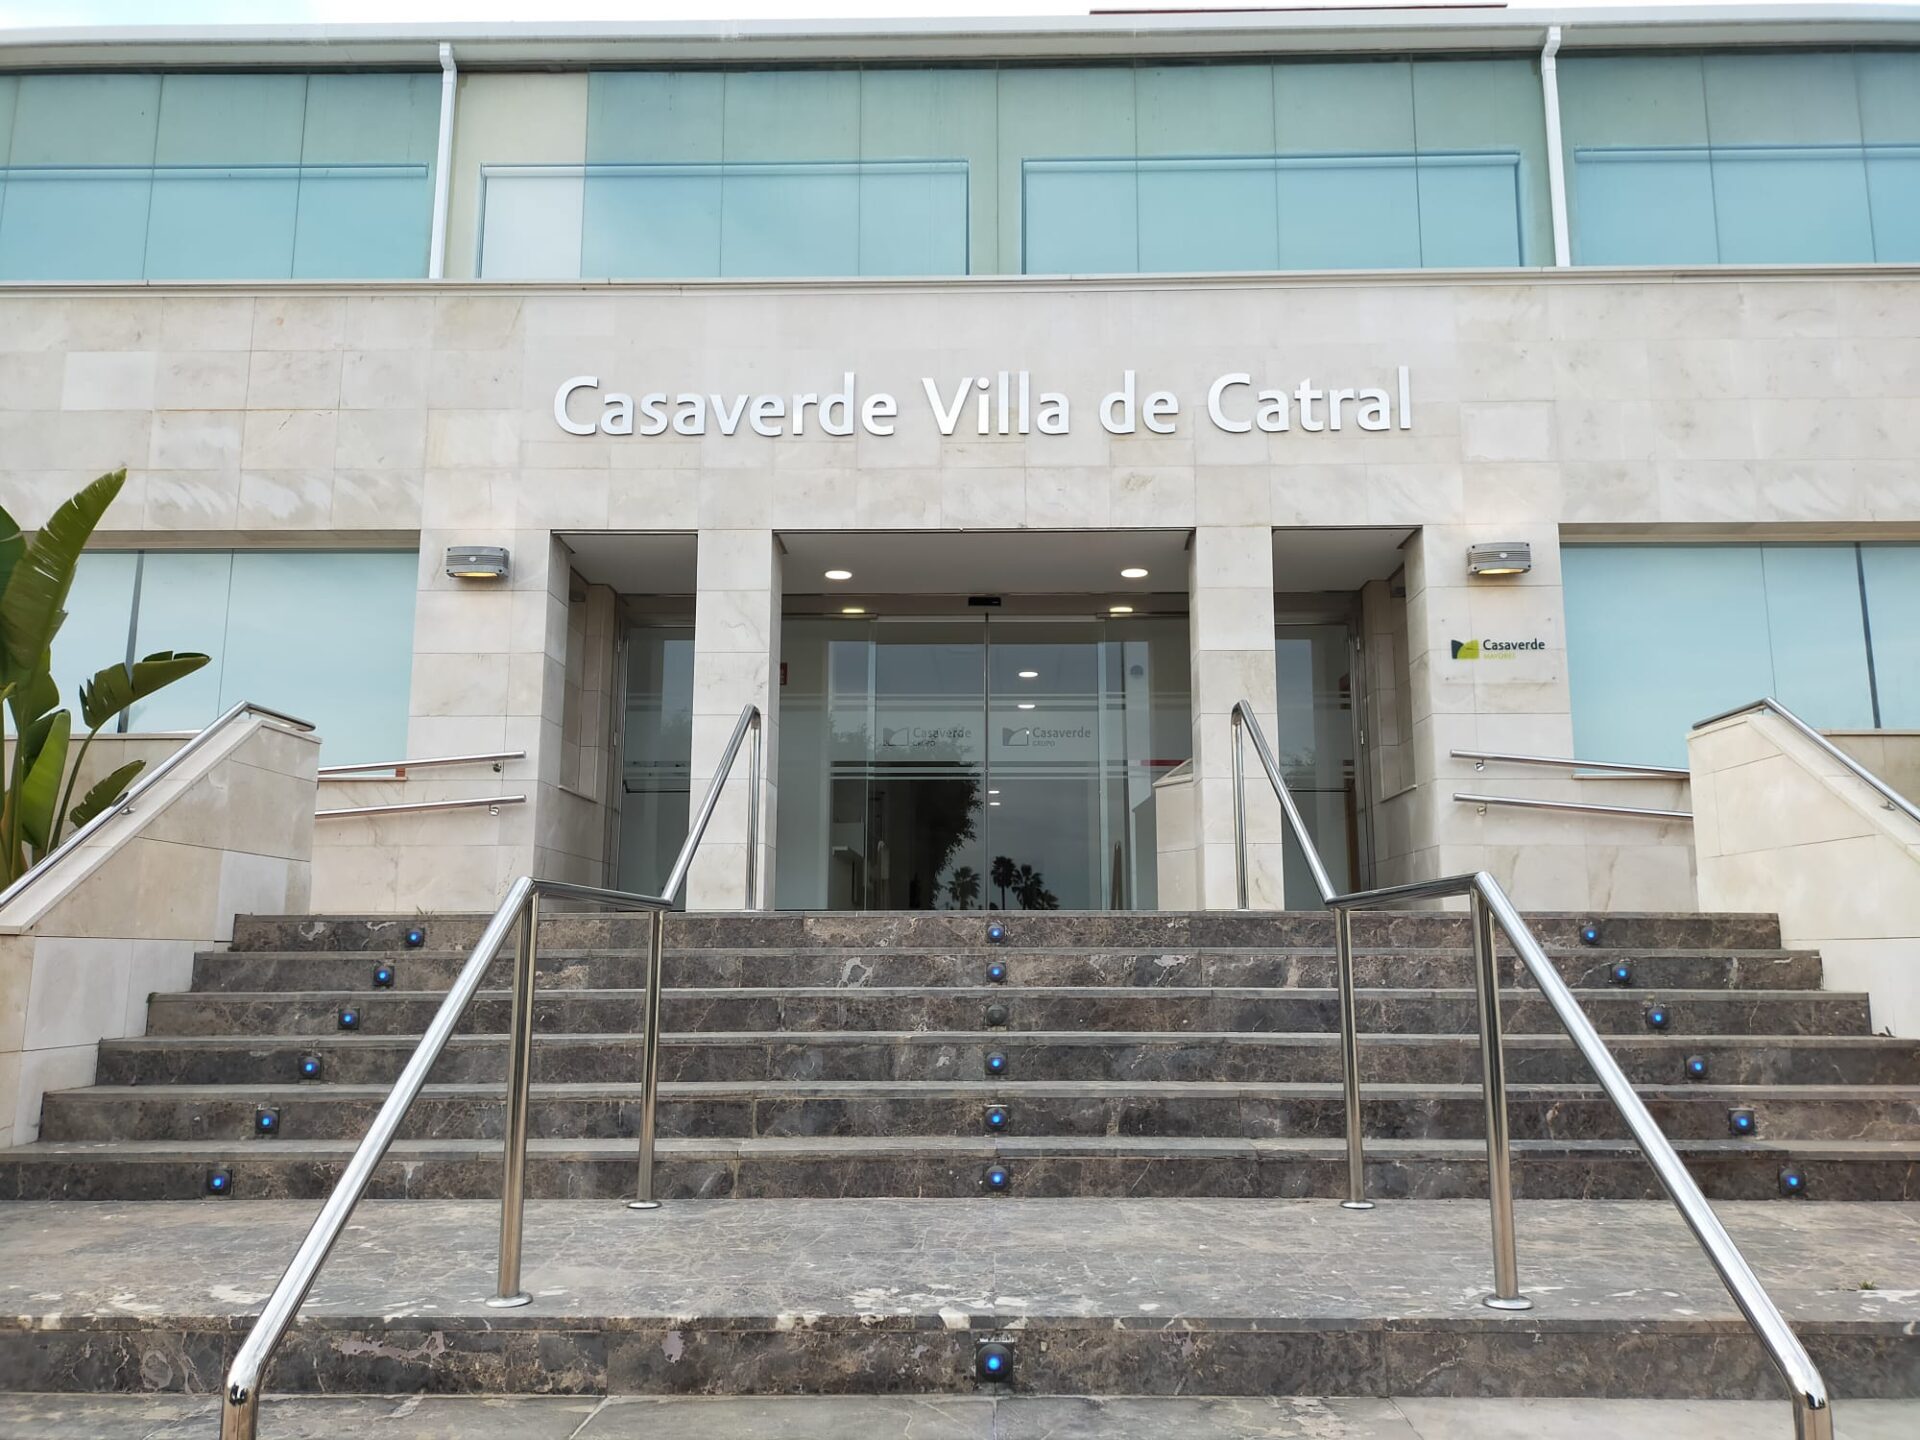 El Grupo Casaverde abre el próximo lunes, 14 de marzo, un centro de mayores en el Complejo Residencial Casaverde Villa de Catral